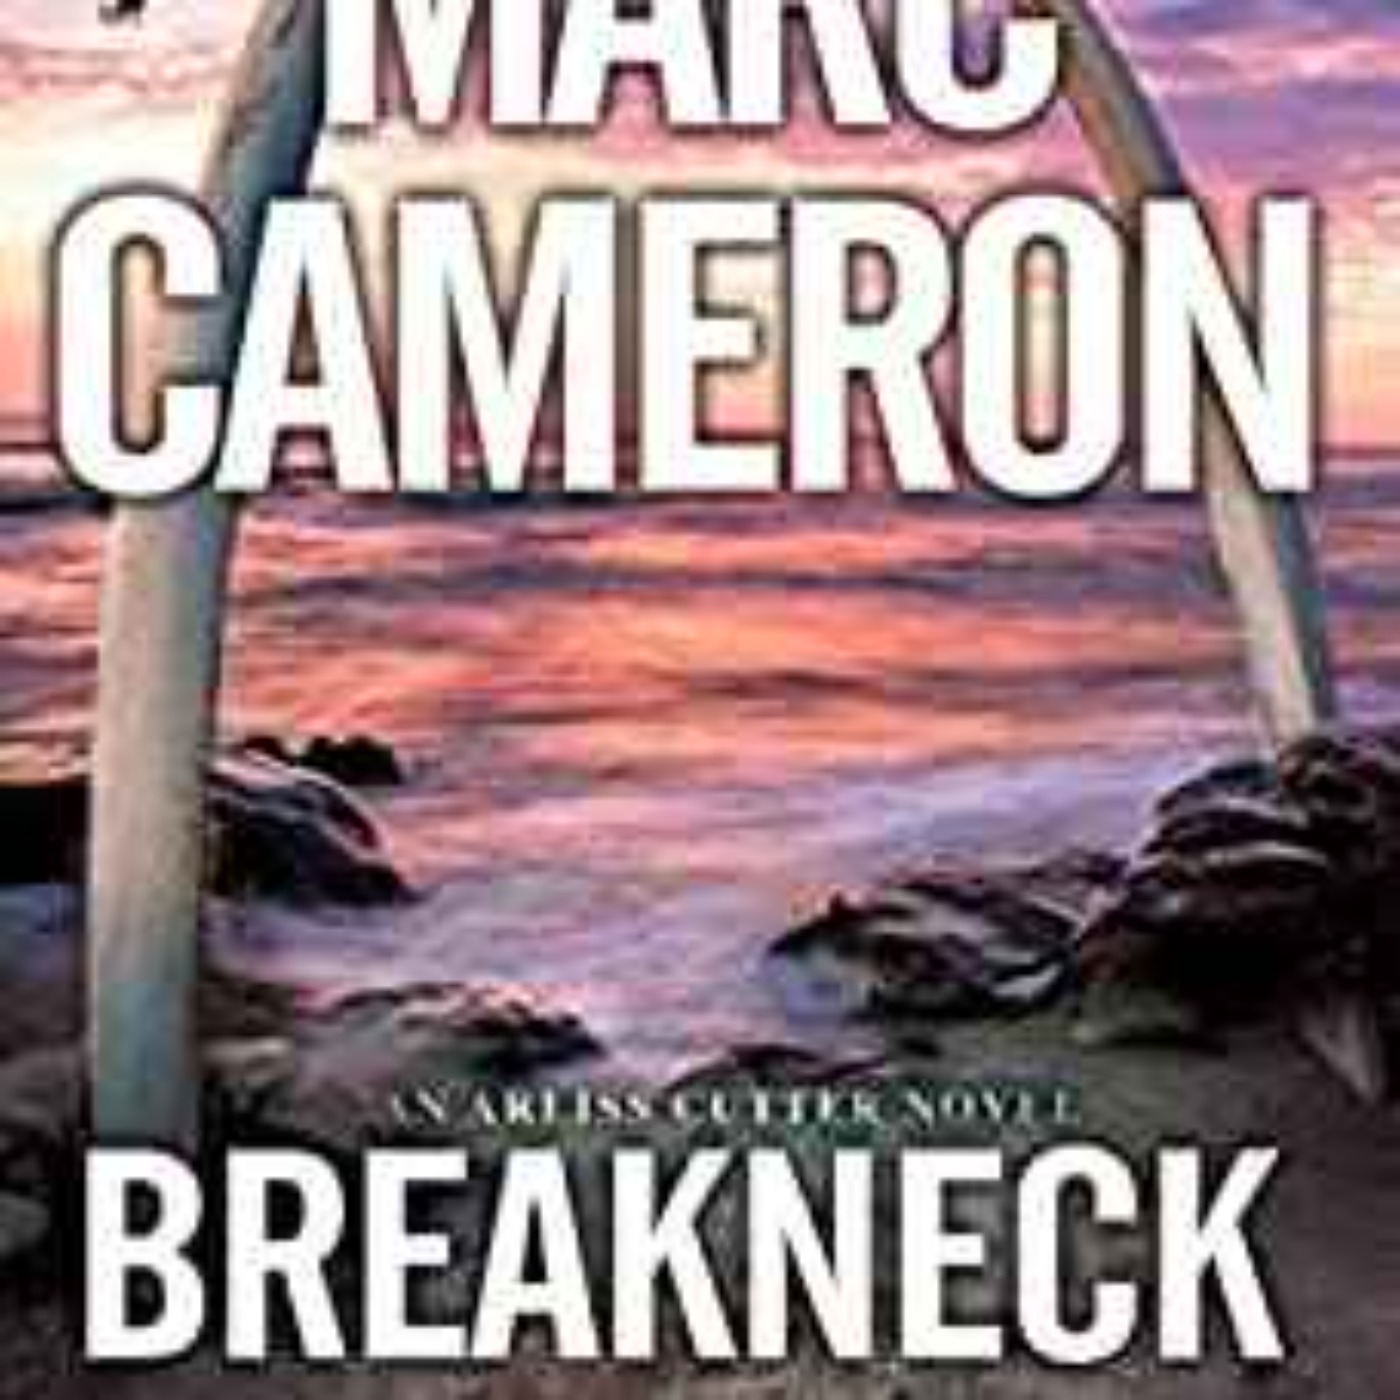 Marc Cameron - Breakneck : An Arliss Cutter Novel Book 5